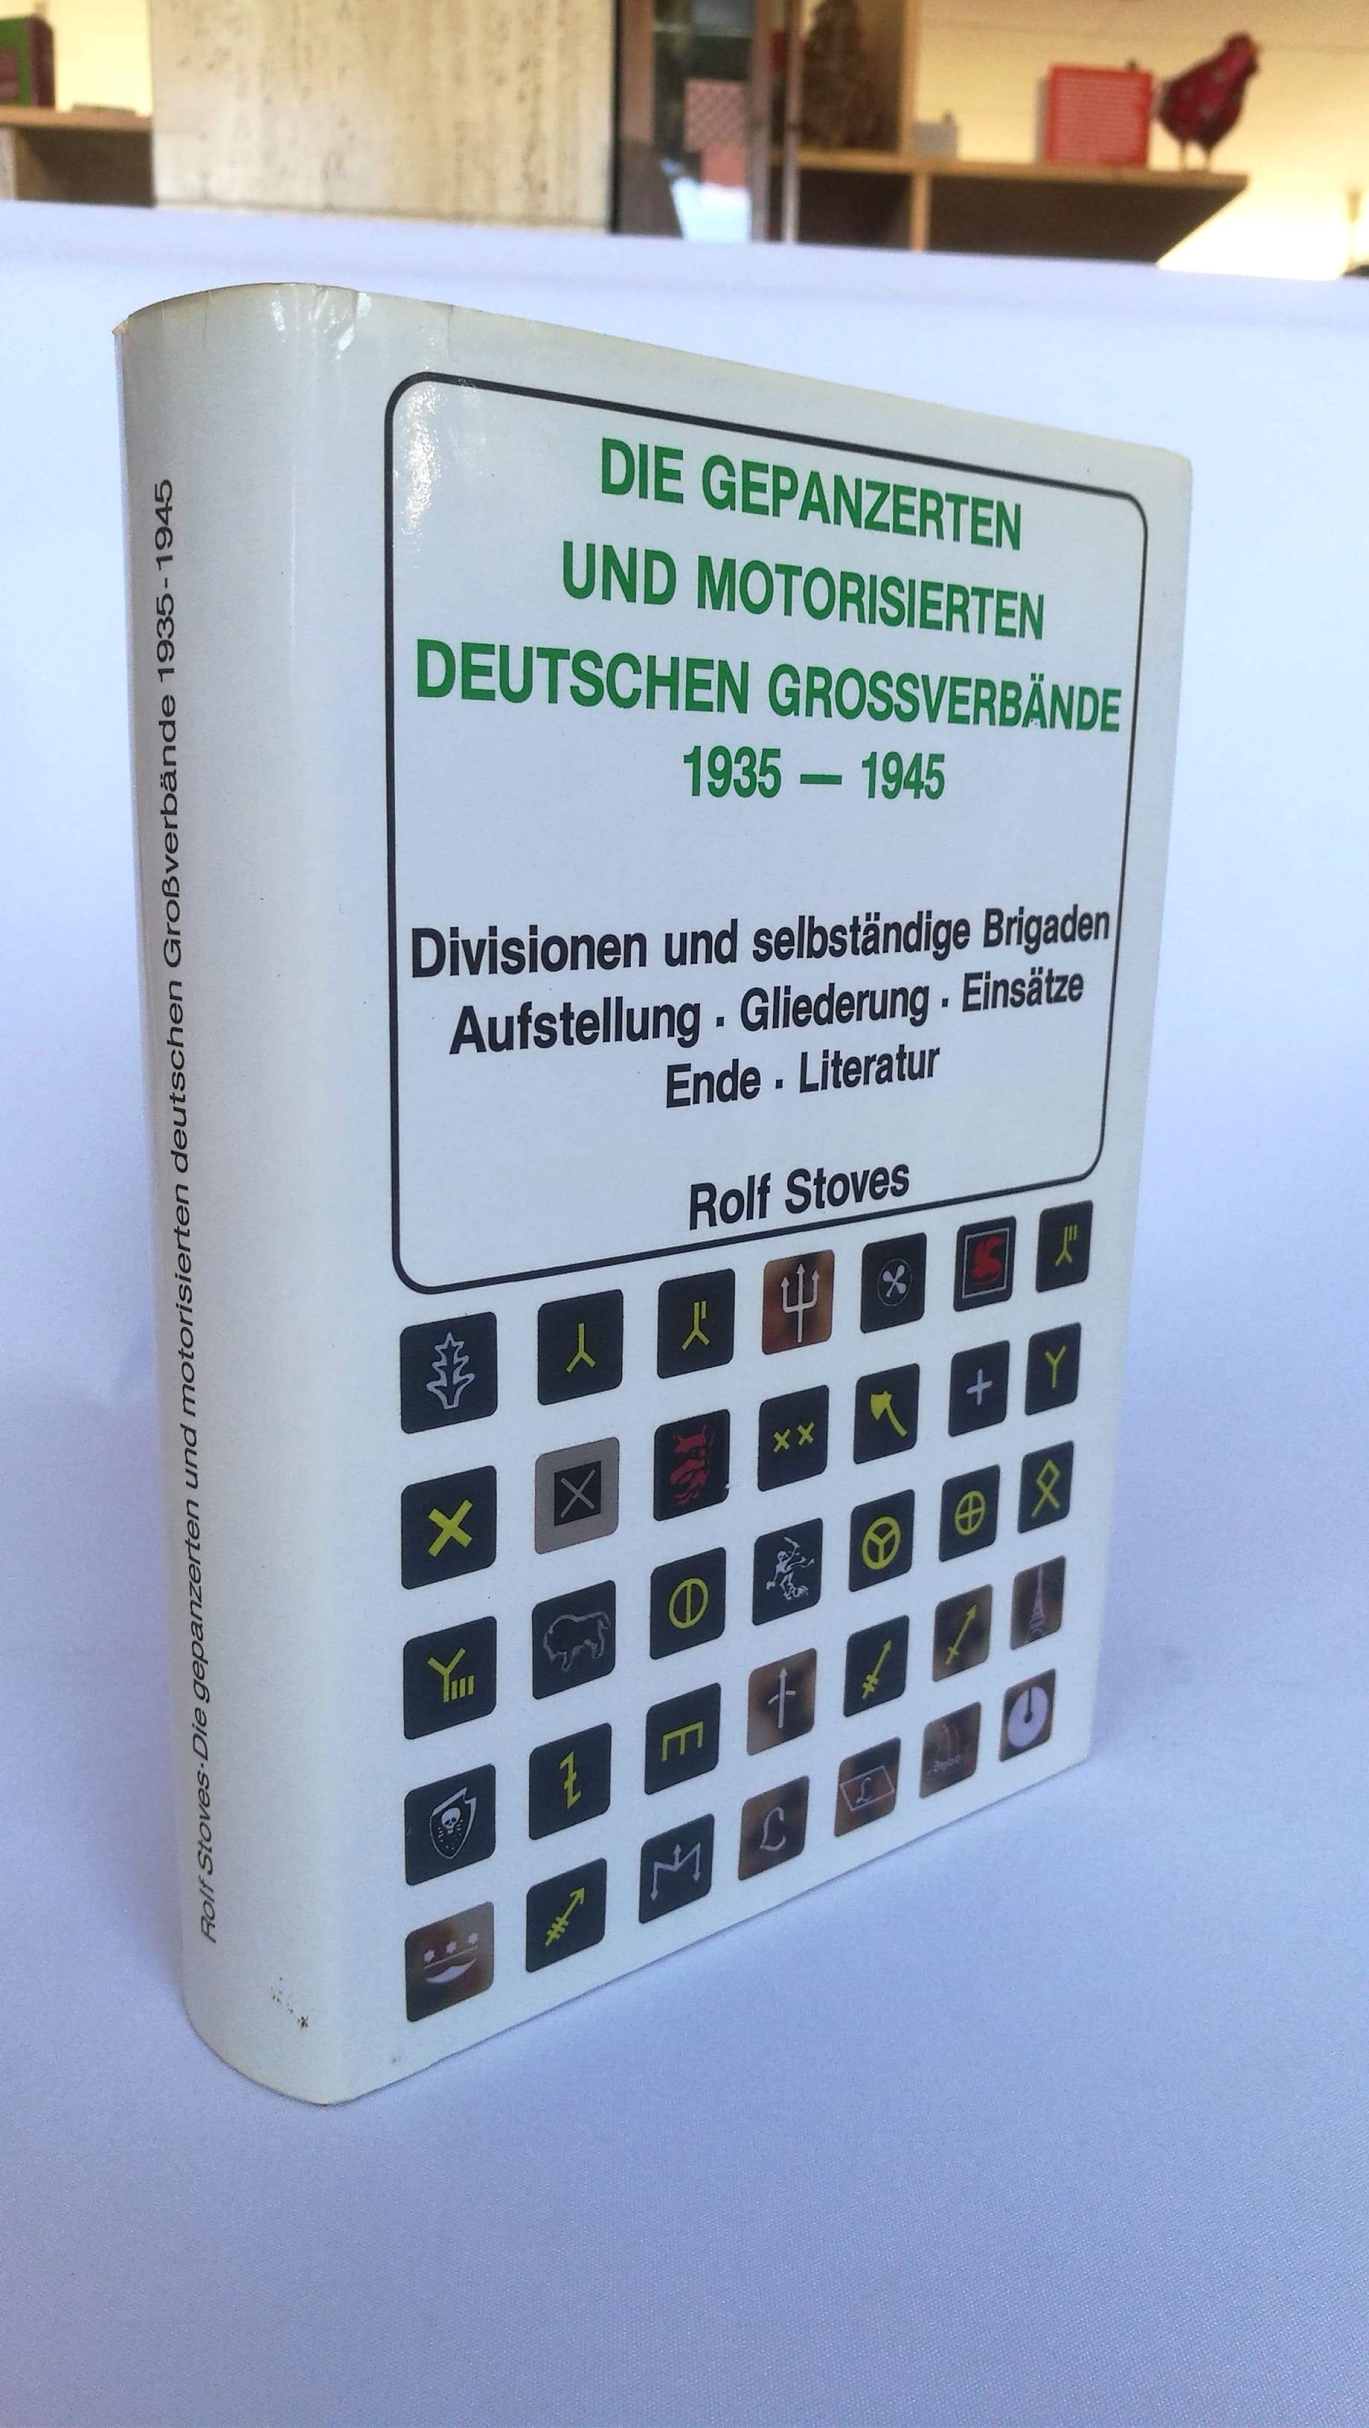 Stoves, Rolf (Verfasser): Die gepanzerten und motorisierten deutschen Grossverbände (Divisionen u. selbständige Brigaden) 1935 - 1945 / Rolf Stoves